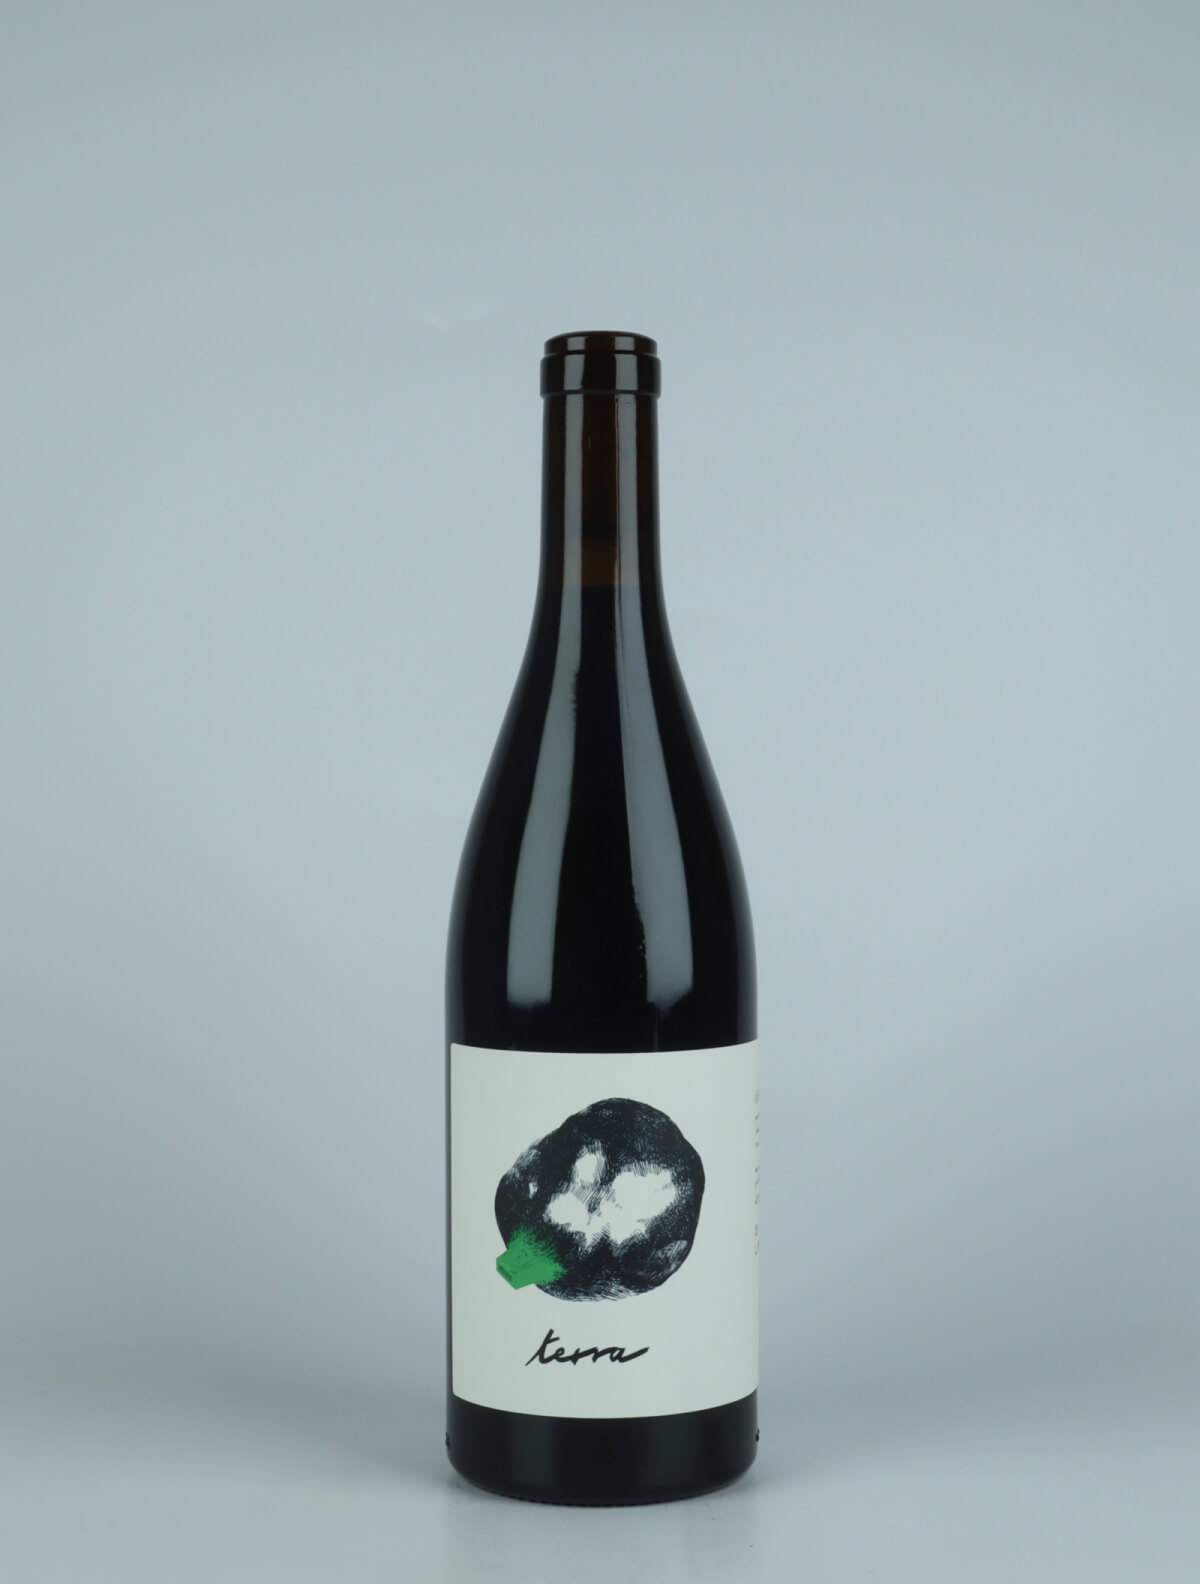 A bottle 2021 Terra Red wine from Slope, Rhône in France